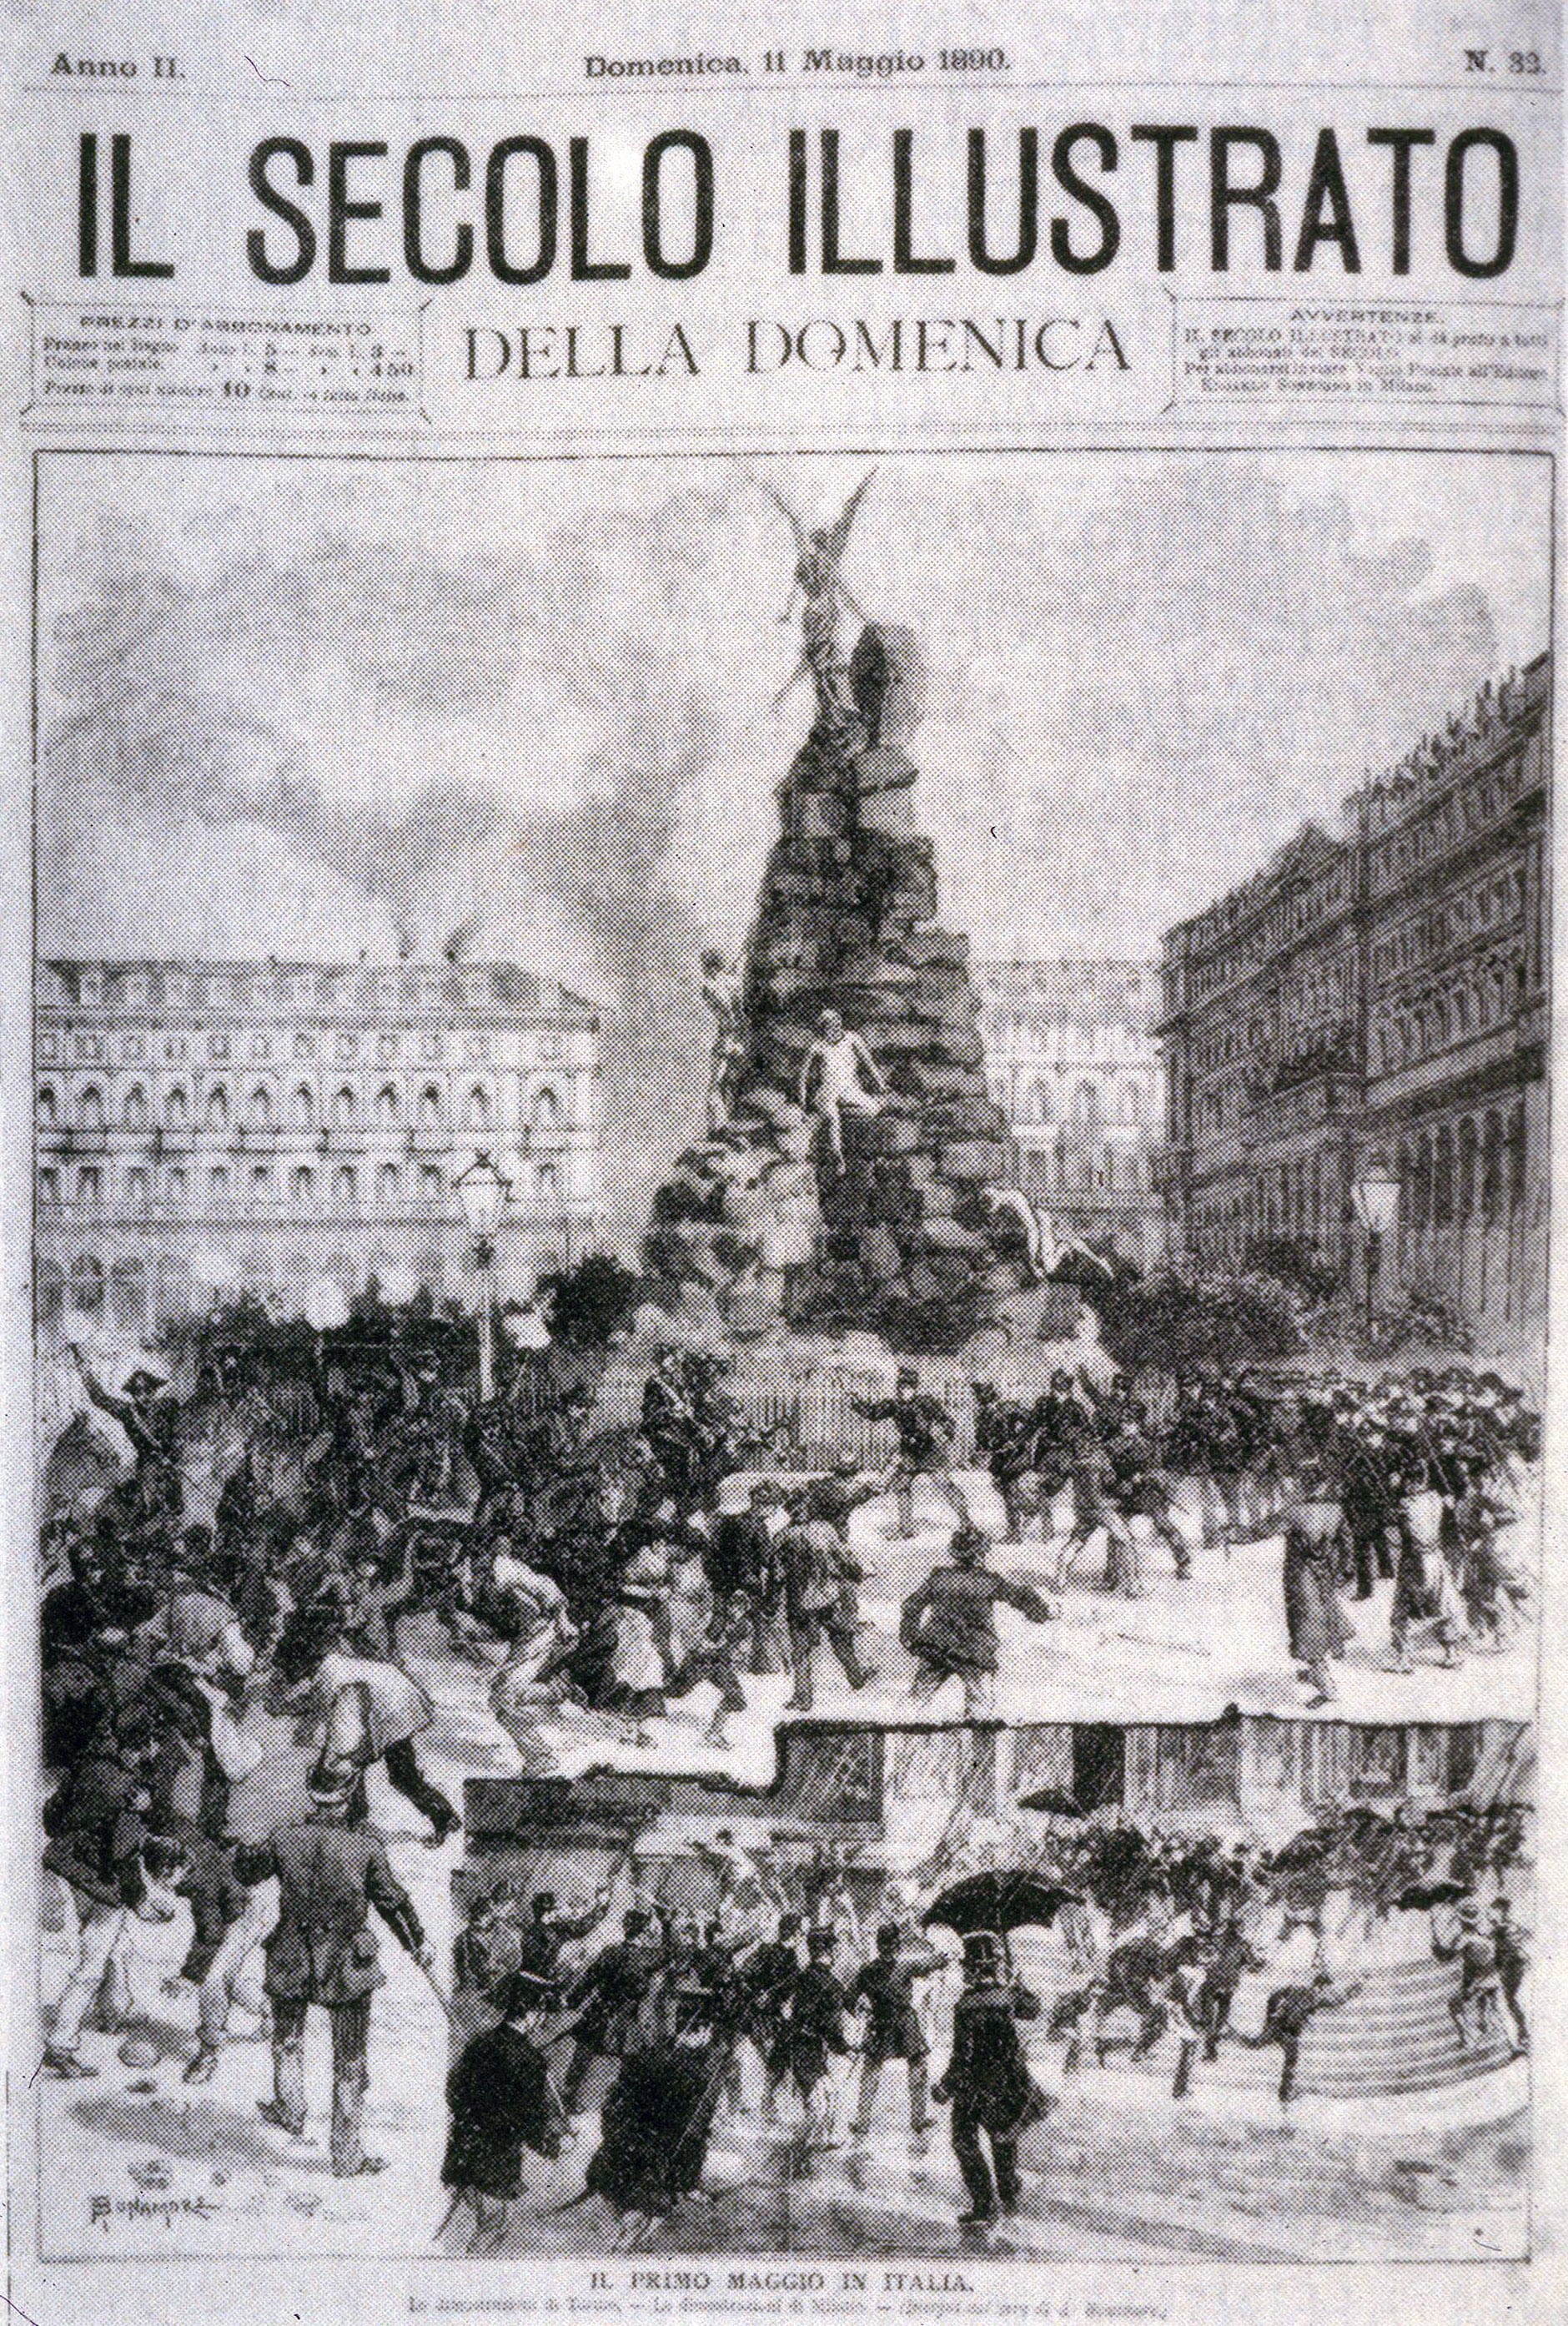 Copertina dedicata alla manifestazione del primo maggio del 1890